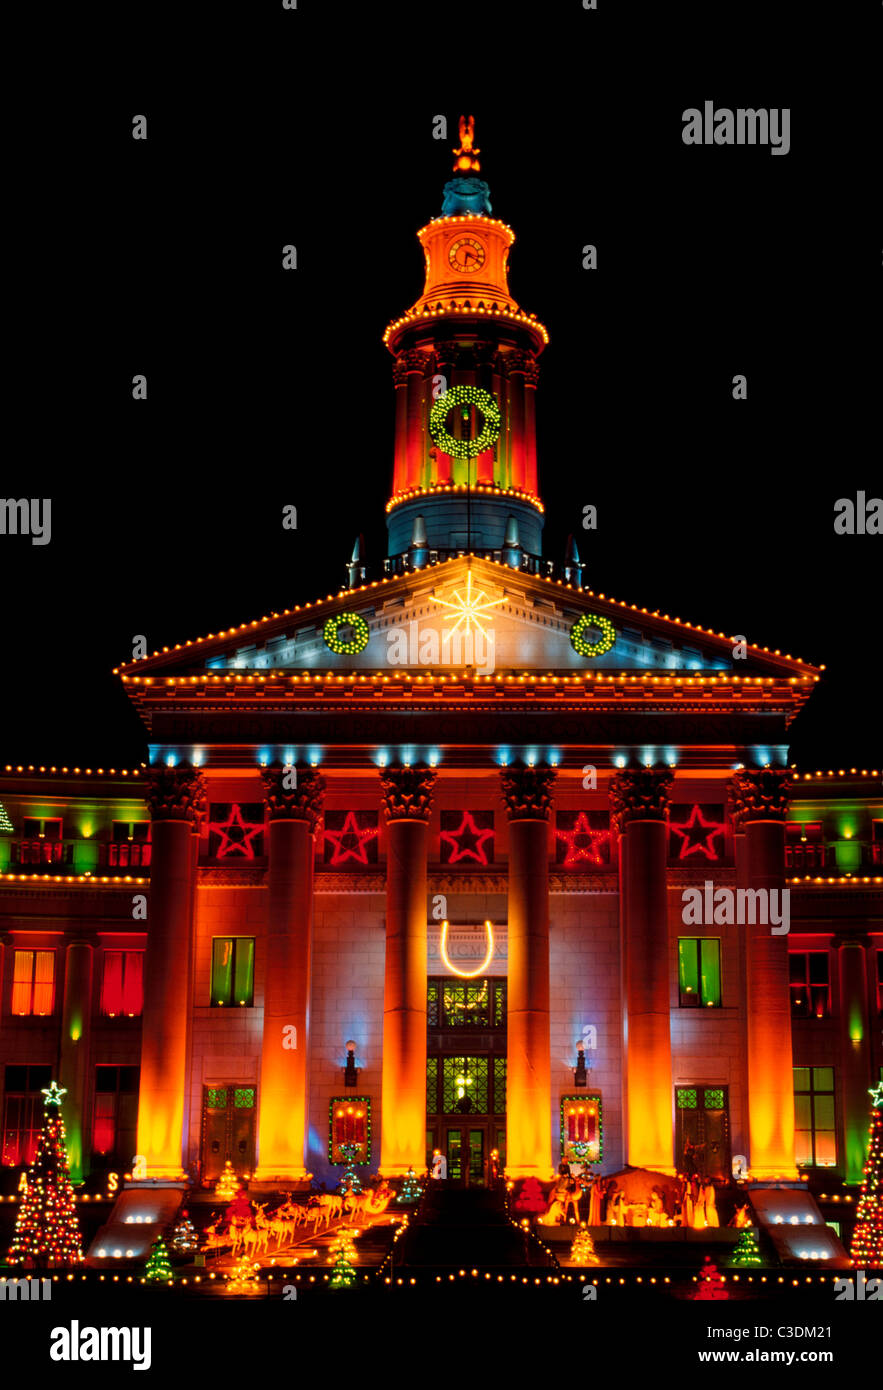 L'assemblée annuelle de l'affichage des lumières de Noël sur le Denver City and County Building a été une tradition dans le Colorado's Mile-High City depuis 1935. Banque D'Images